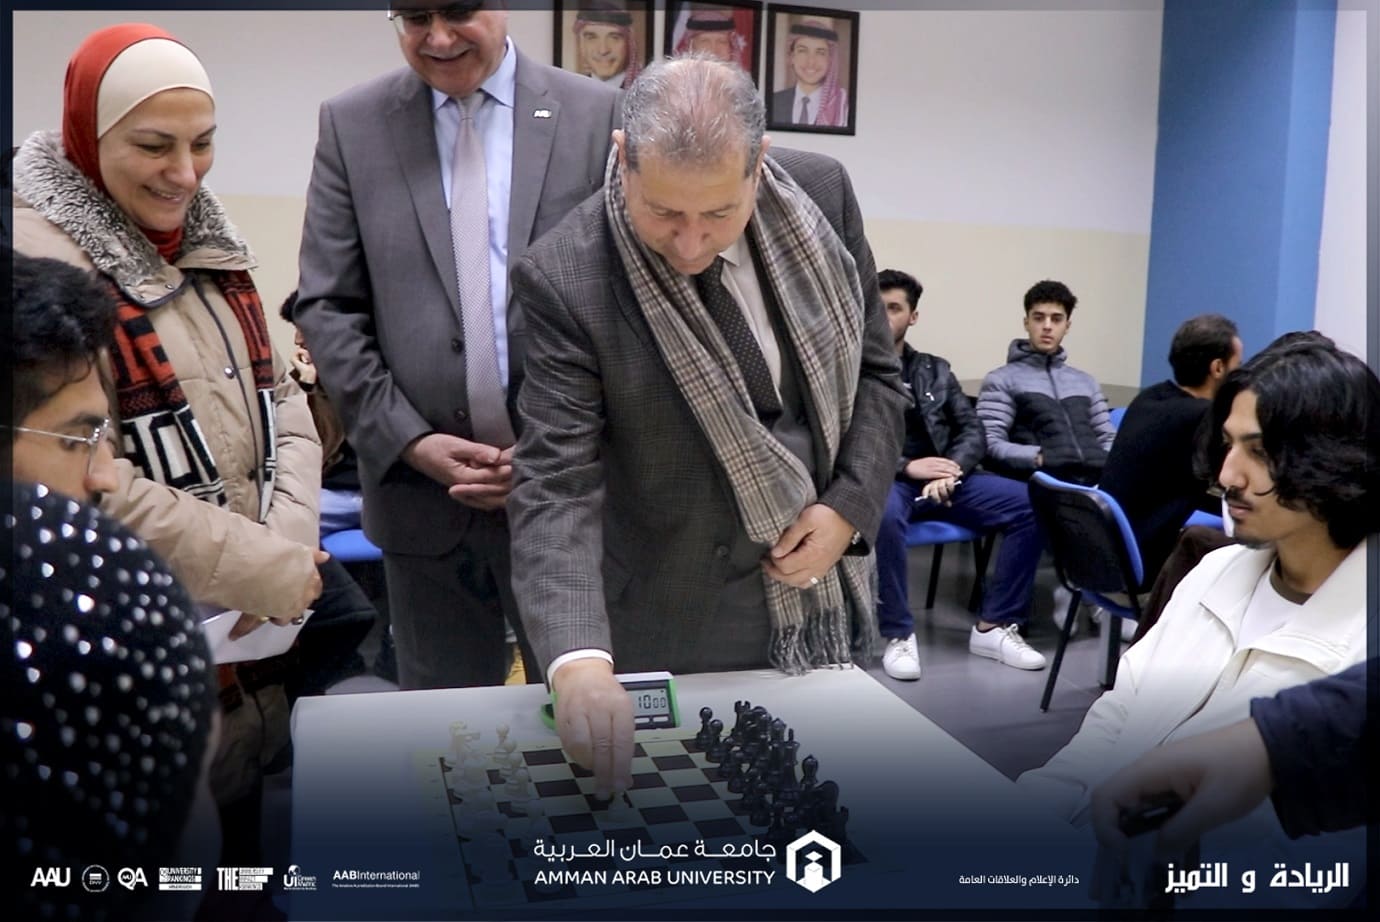 طلبة "عمان العربية" يتنافسون خلال بطولة شطرنج على مستوى الجامعة 